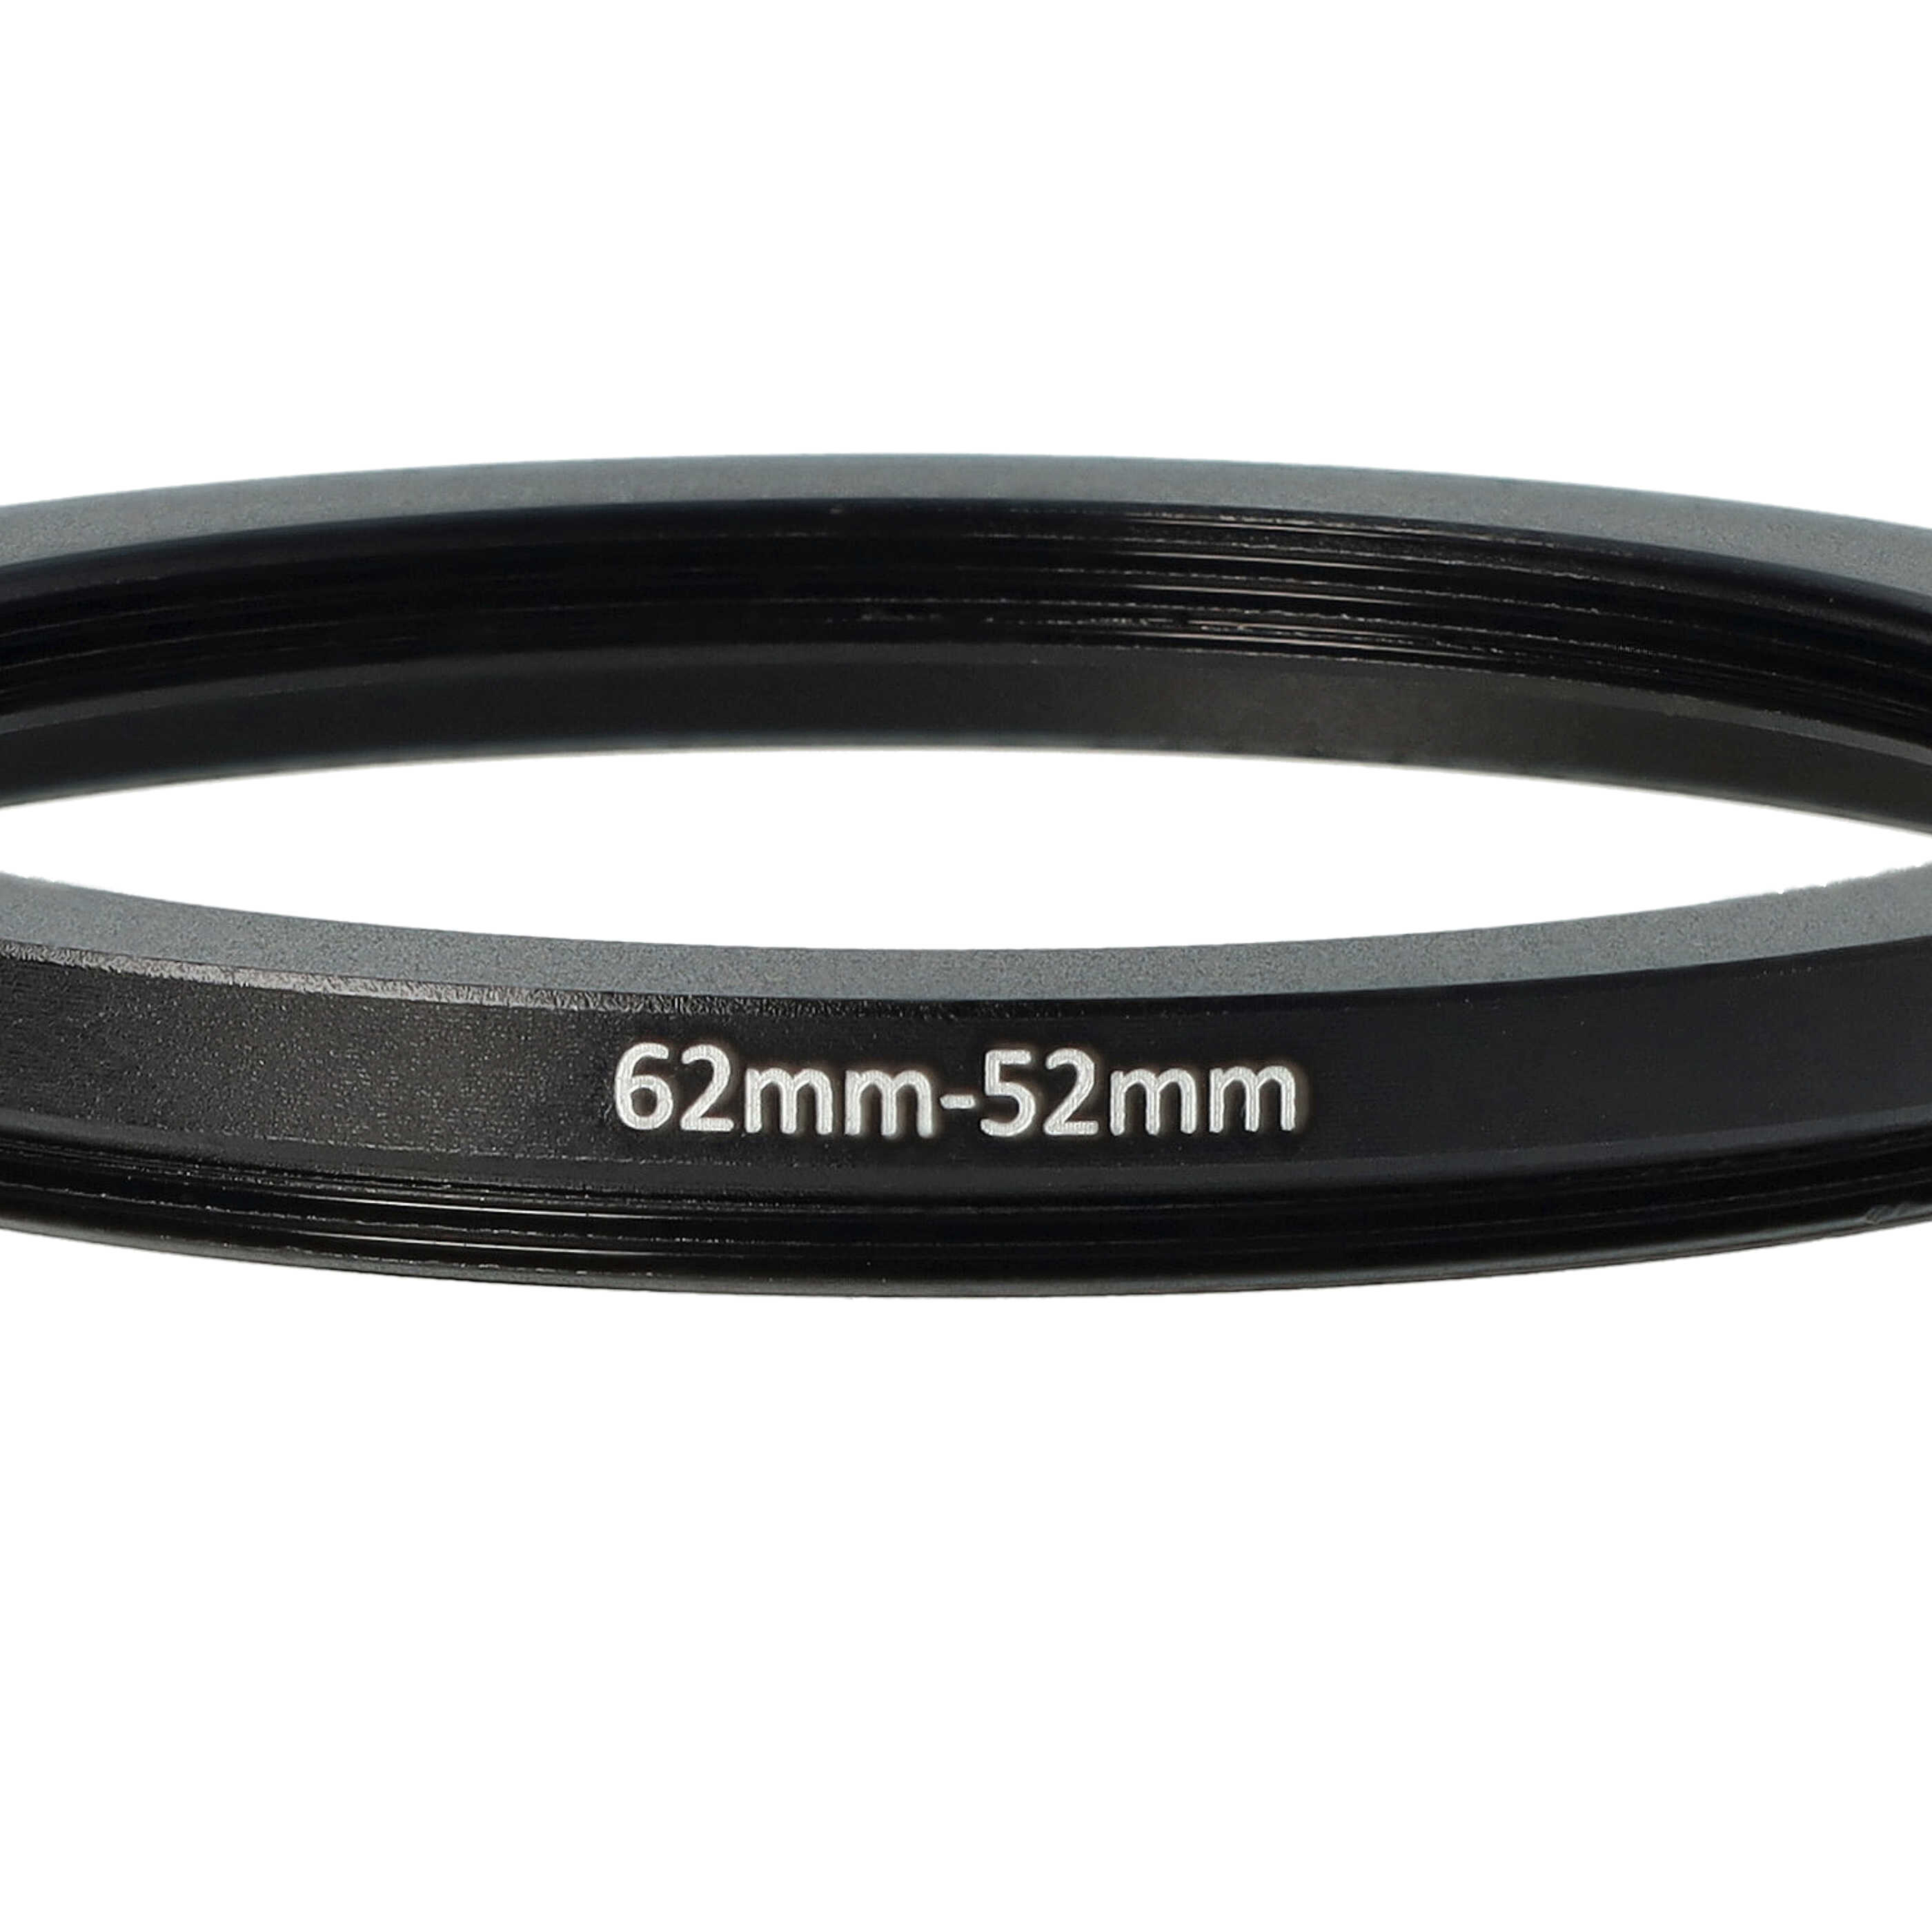 Anello adattatore step-down da 62 mm a 52 mm per obiettivo fotocamera - Adattatore filtro, metallo, nero